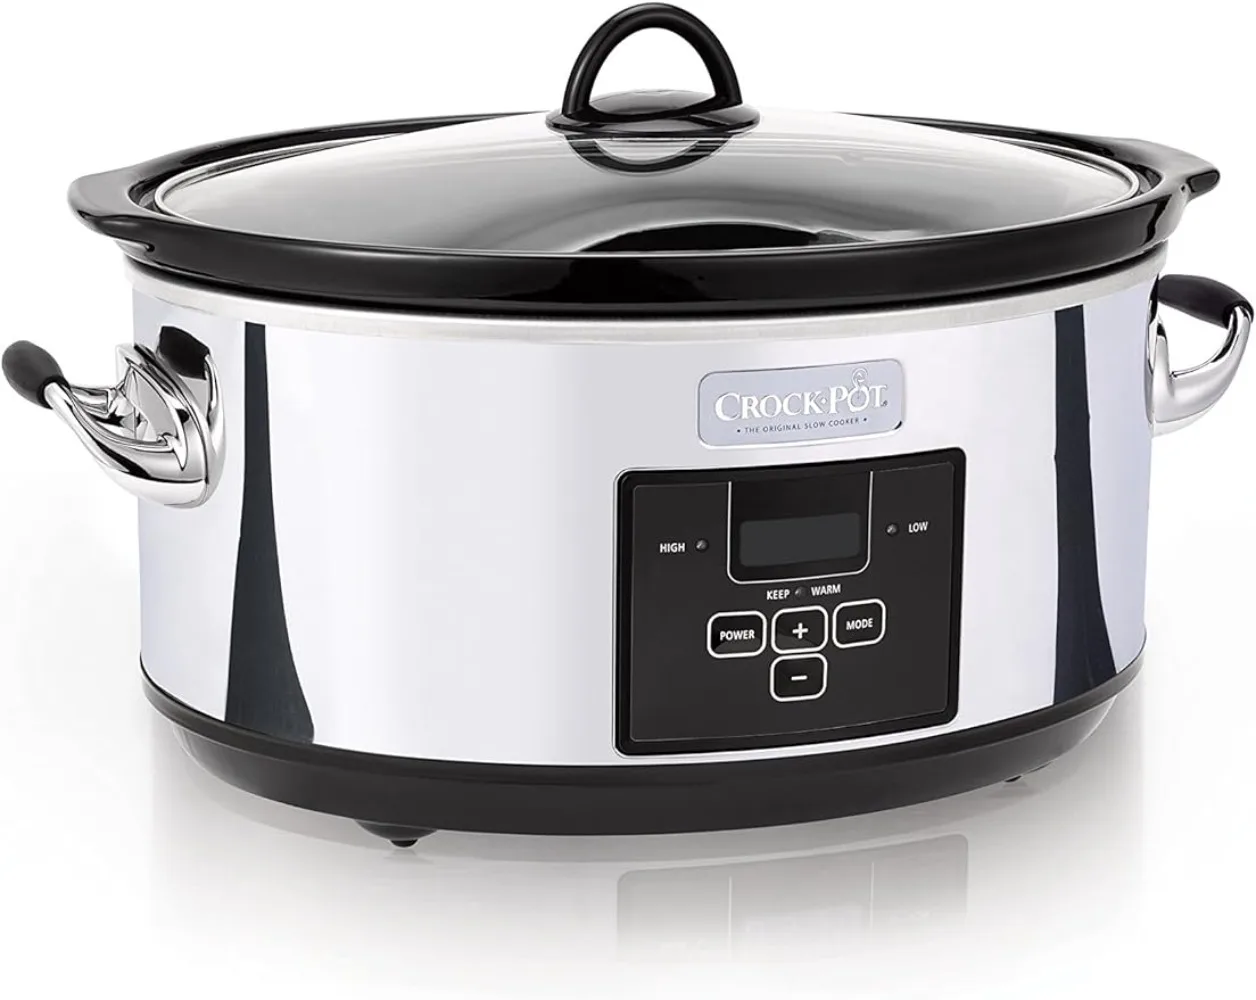 

Crock-Pot 7 Quart Programmable Slow Cooker with Digital Timer, Food Warmer, Polished Platinum